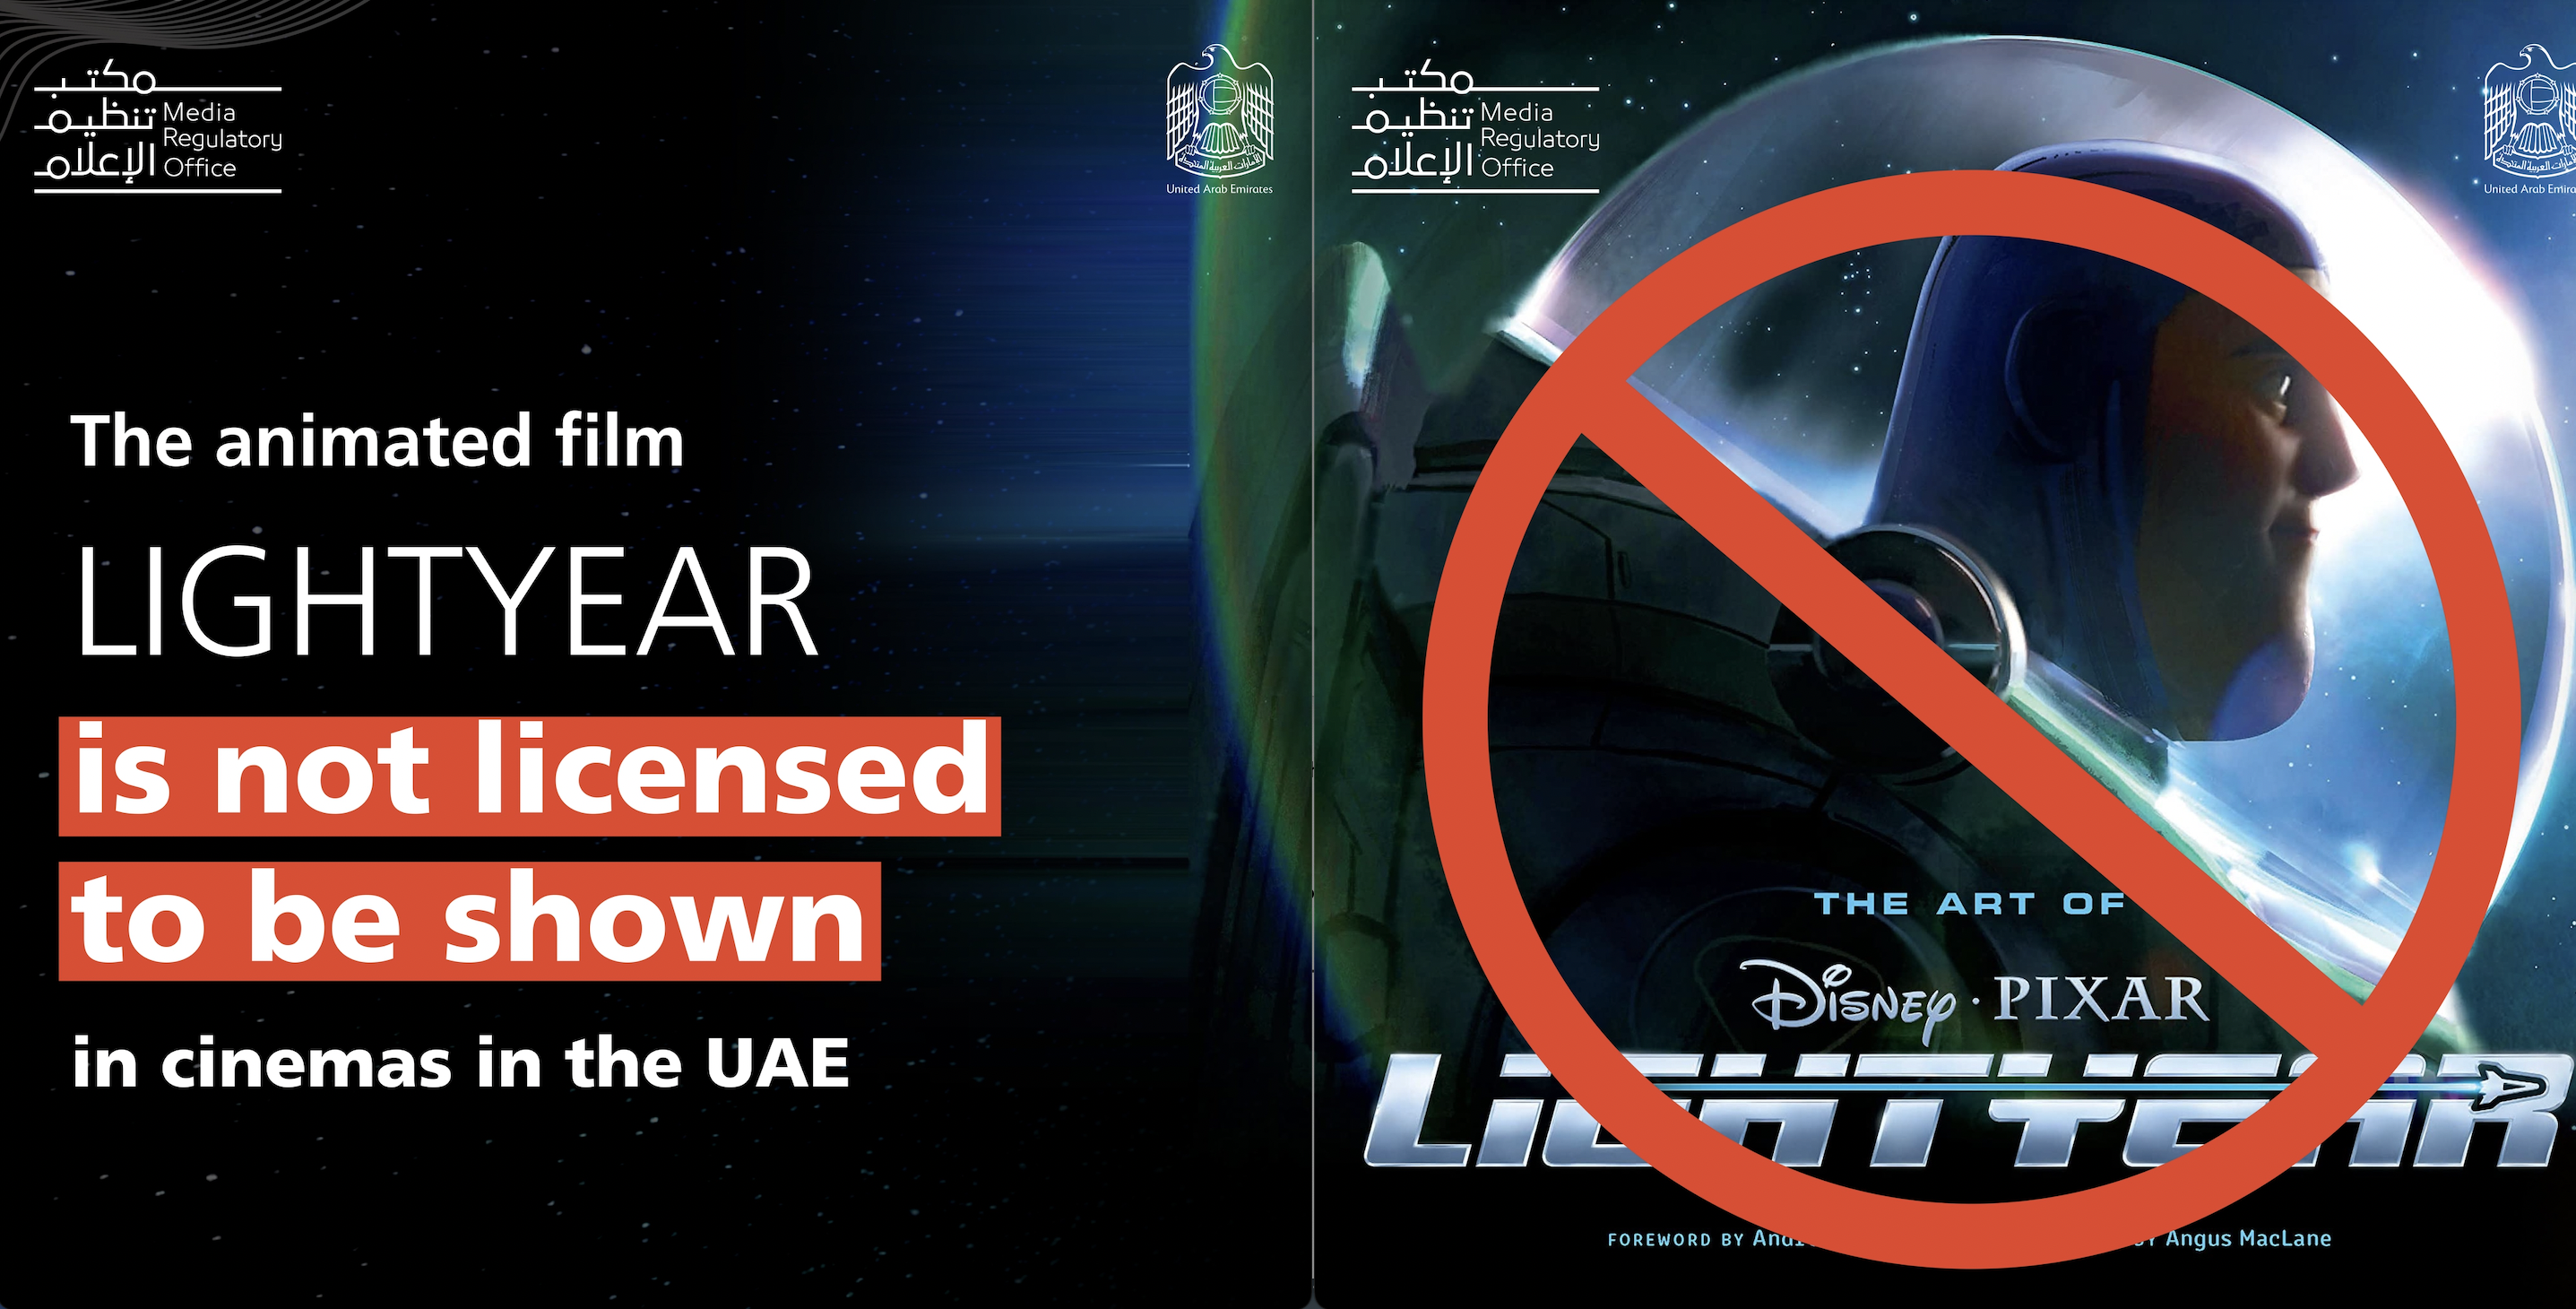 United Arab Emirated bans Lightyear